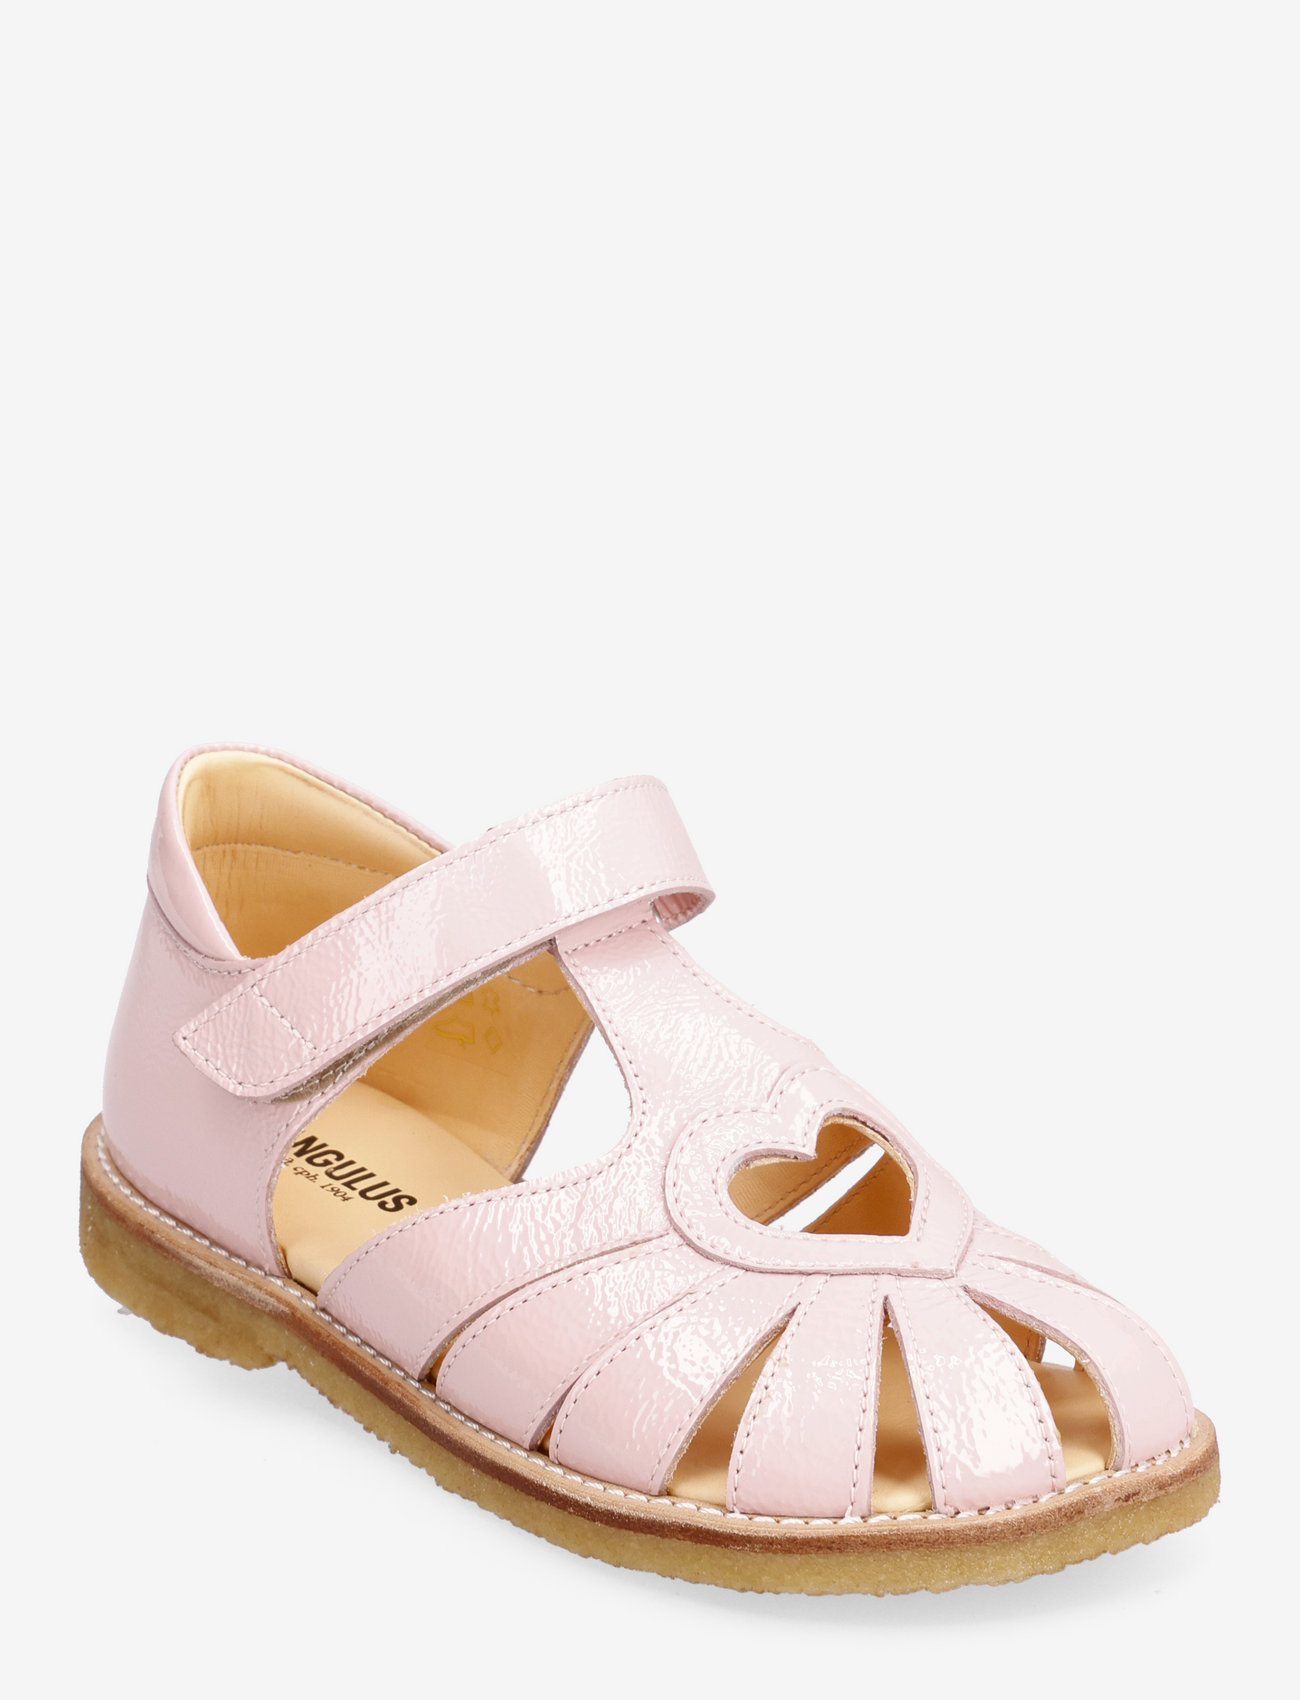 ANGULUS - Sandals - flat - closed toe - - summer savings - 1303 rosa - 0